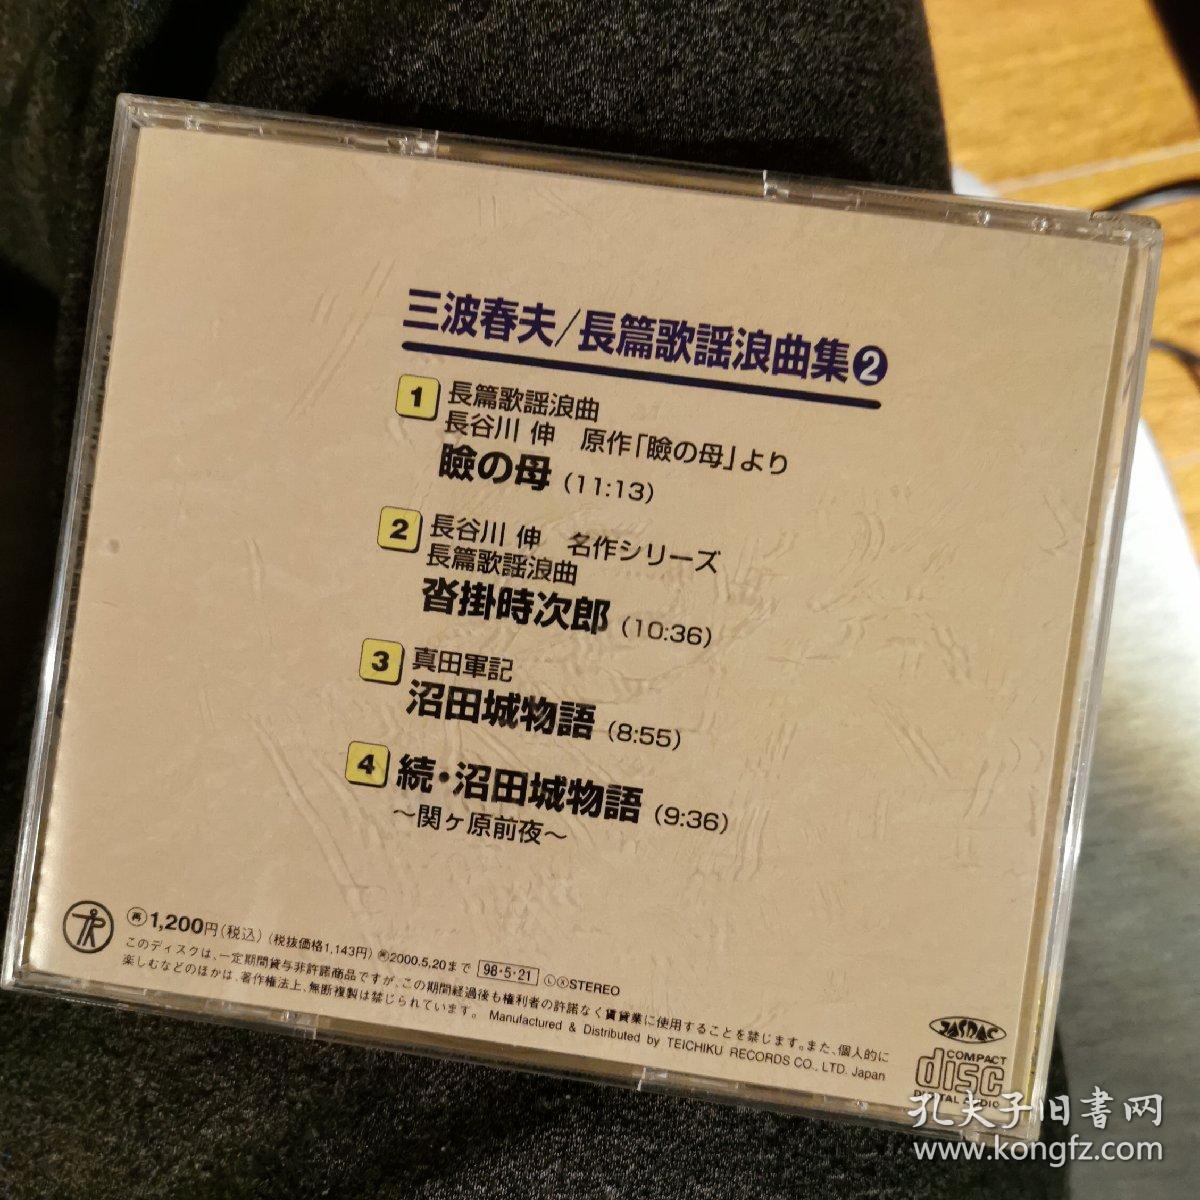 原版演歌唱片（2000）
三波春夫/长歌歌谣浪曲集2